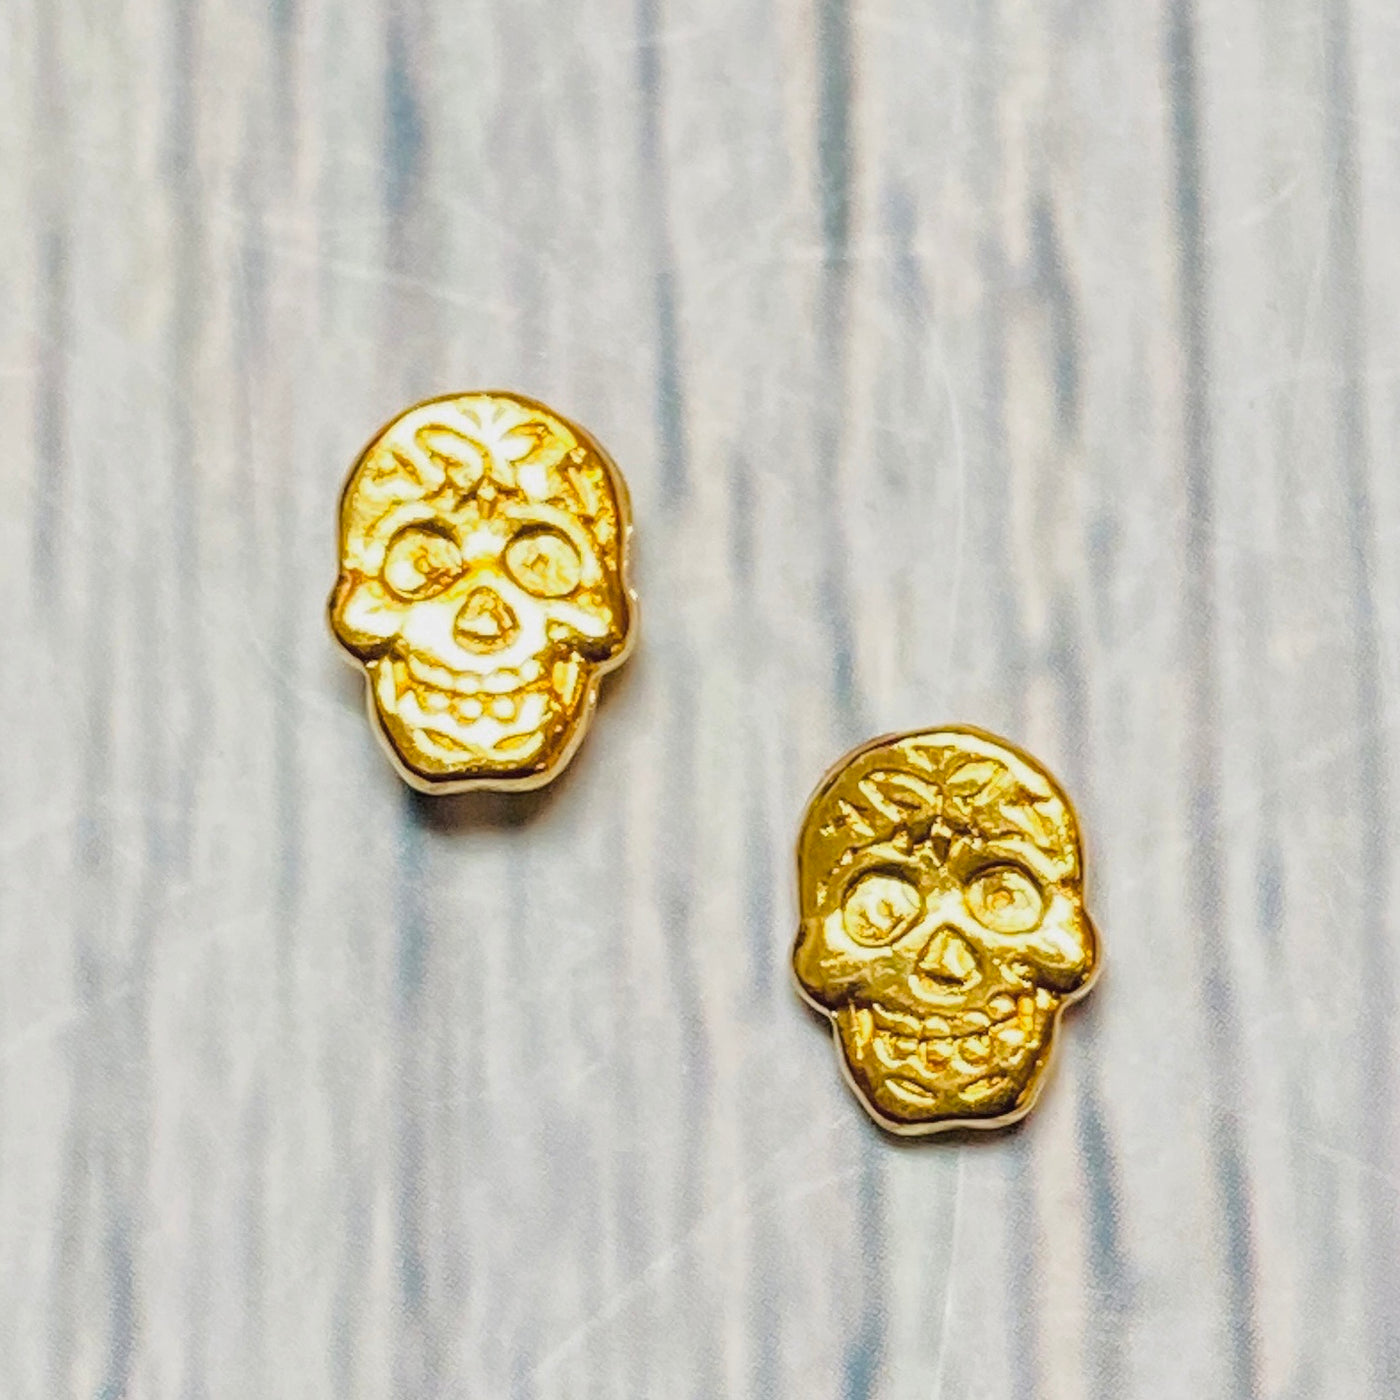 Gold plated brass sugar skull post earrings.